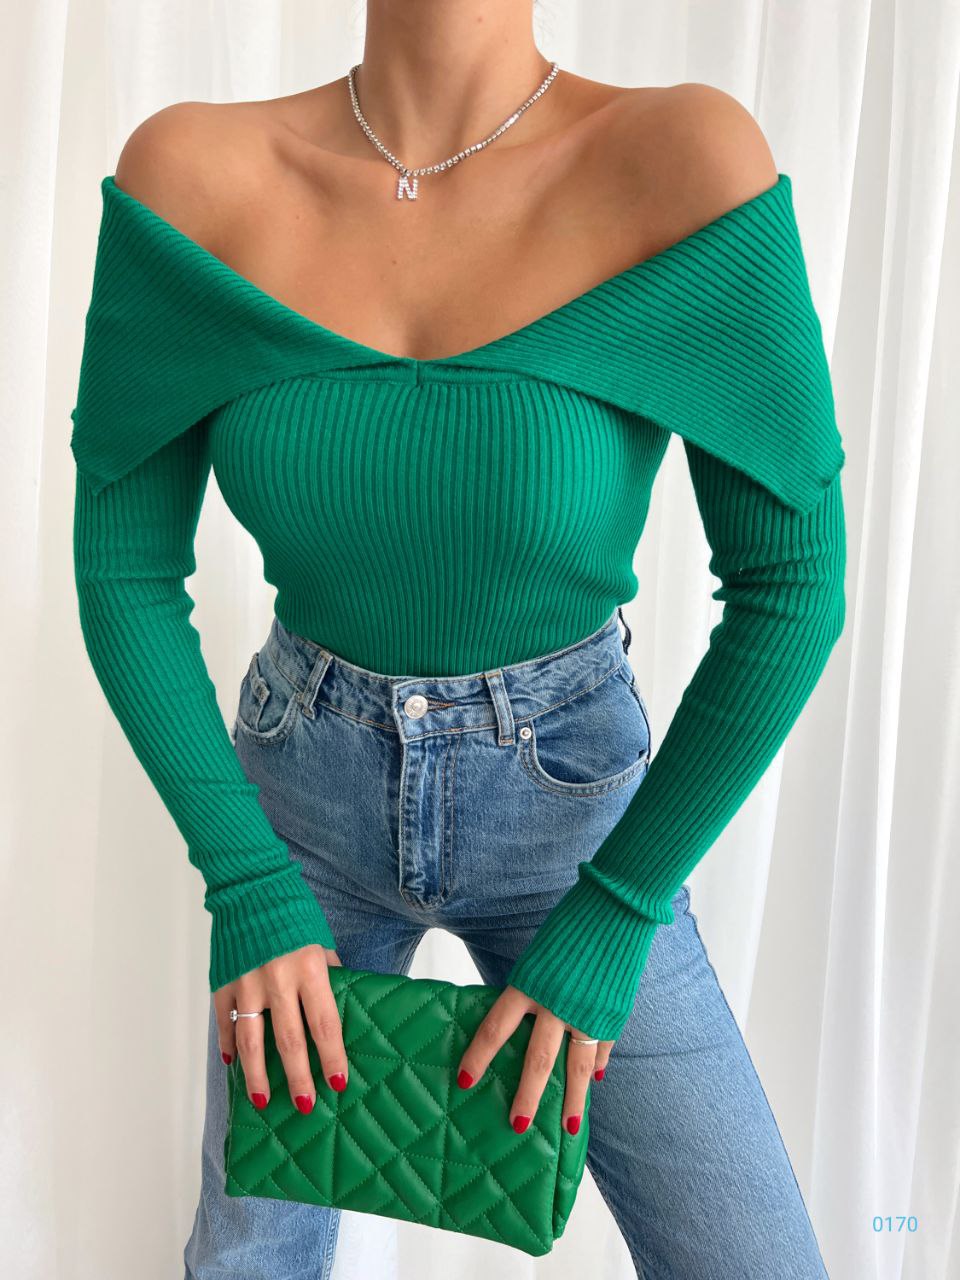 Дамска блуза NANSI  https://bvseductive.com/products/womans-s-shirts-tops-nansi-1  актуална дамска блуза в зелен цвят модел с комфортна кройка и едноцветен дизайн с нежно, отворено деколте и дълги ръкави лесно може да се комбинира с пола или панталон страхотен избор за Вашата удобна визия подходяща за S/M